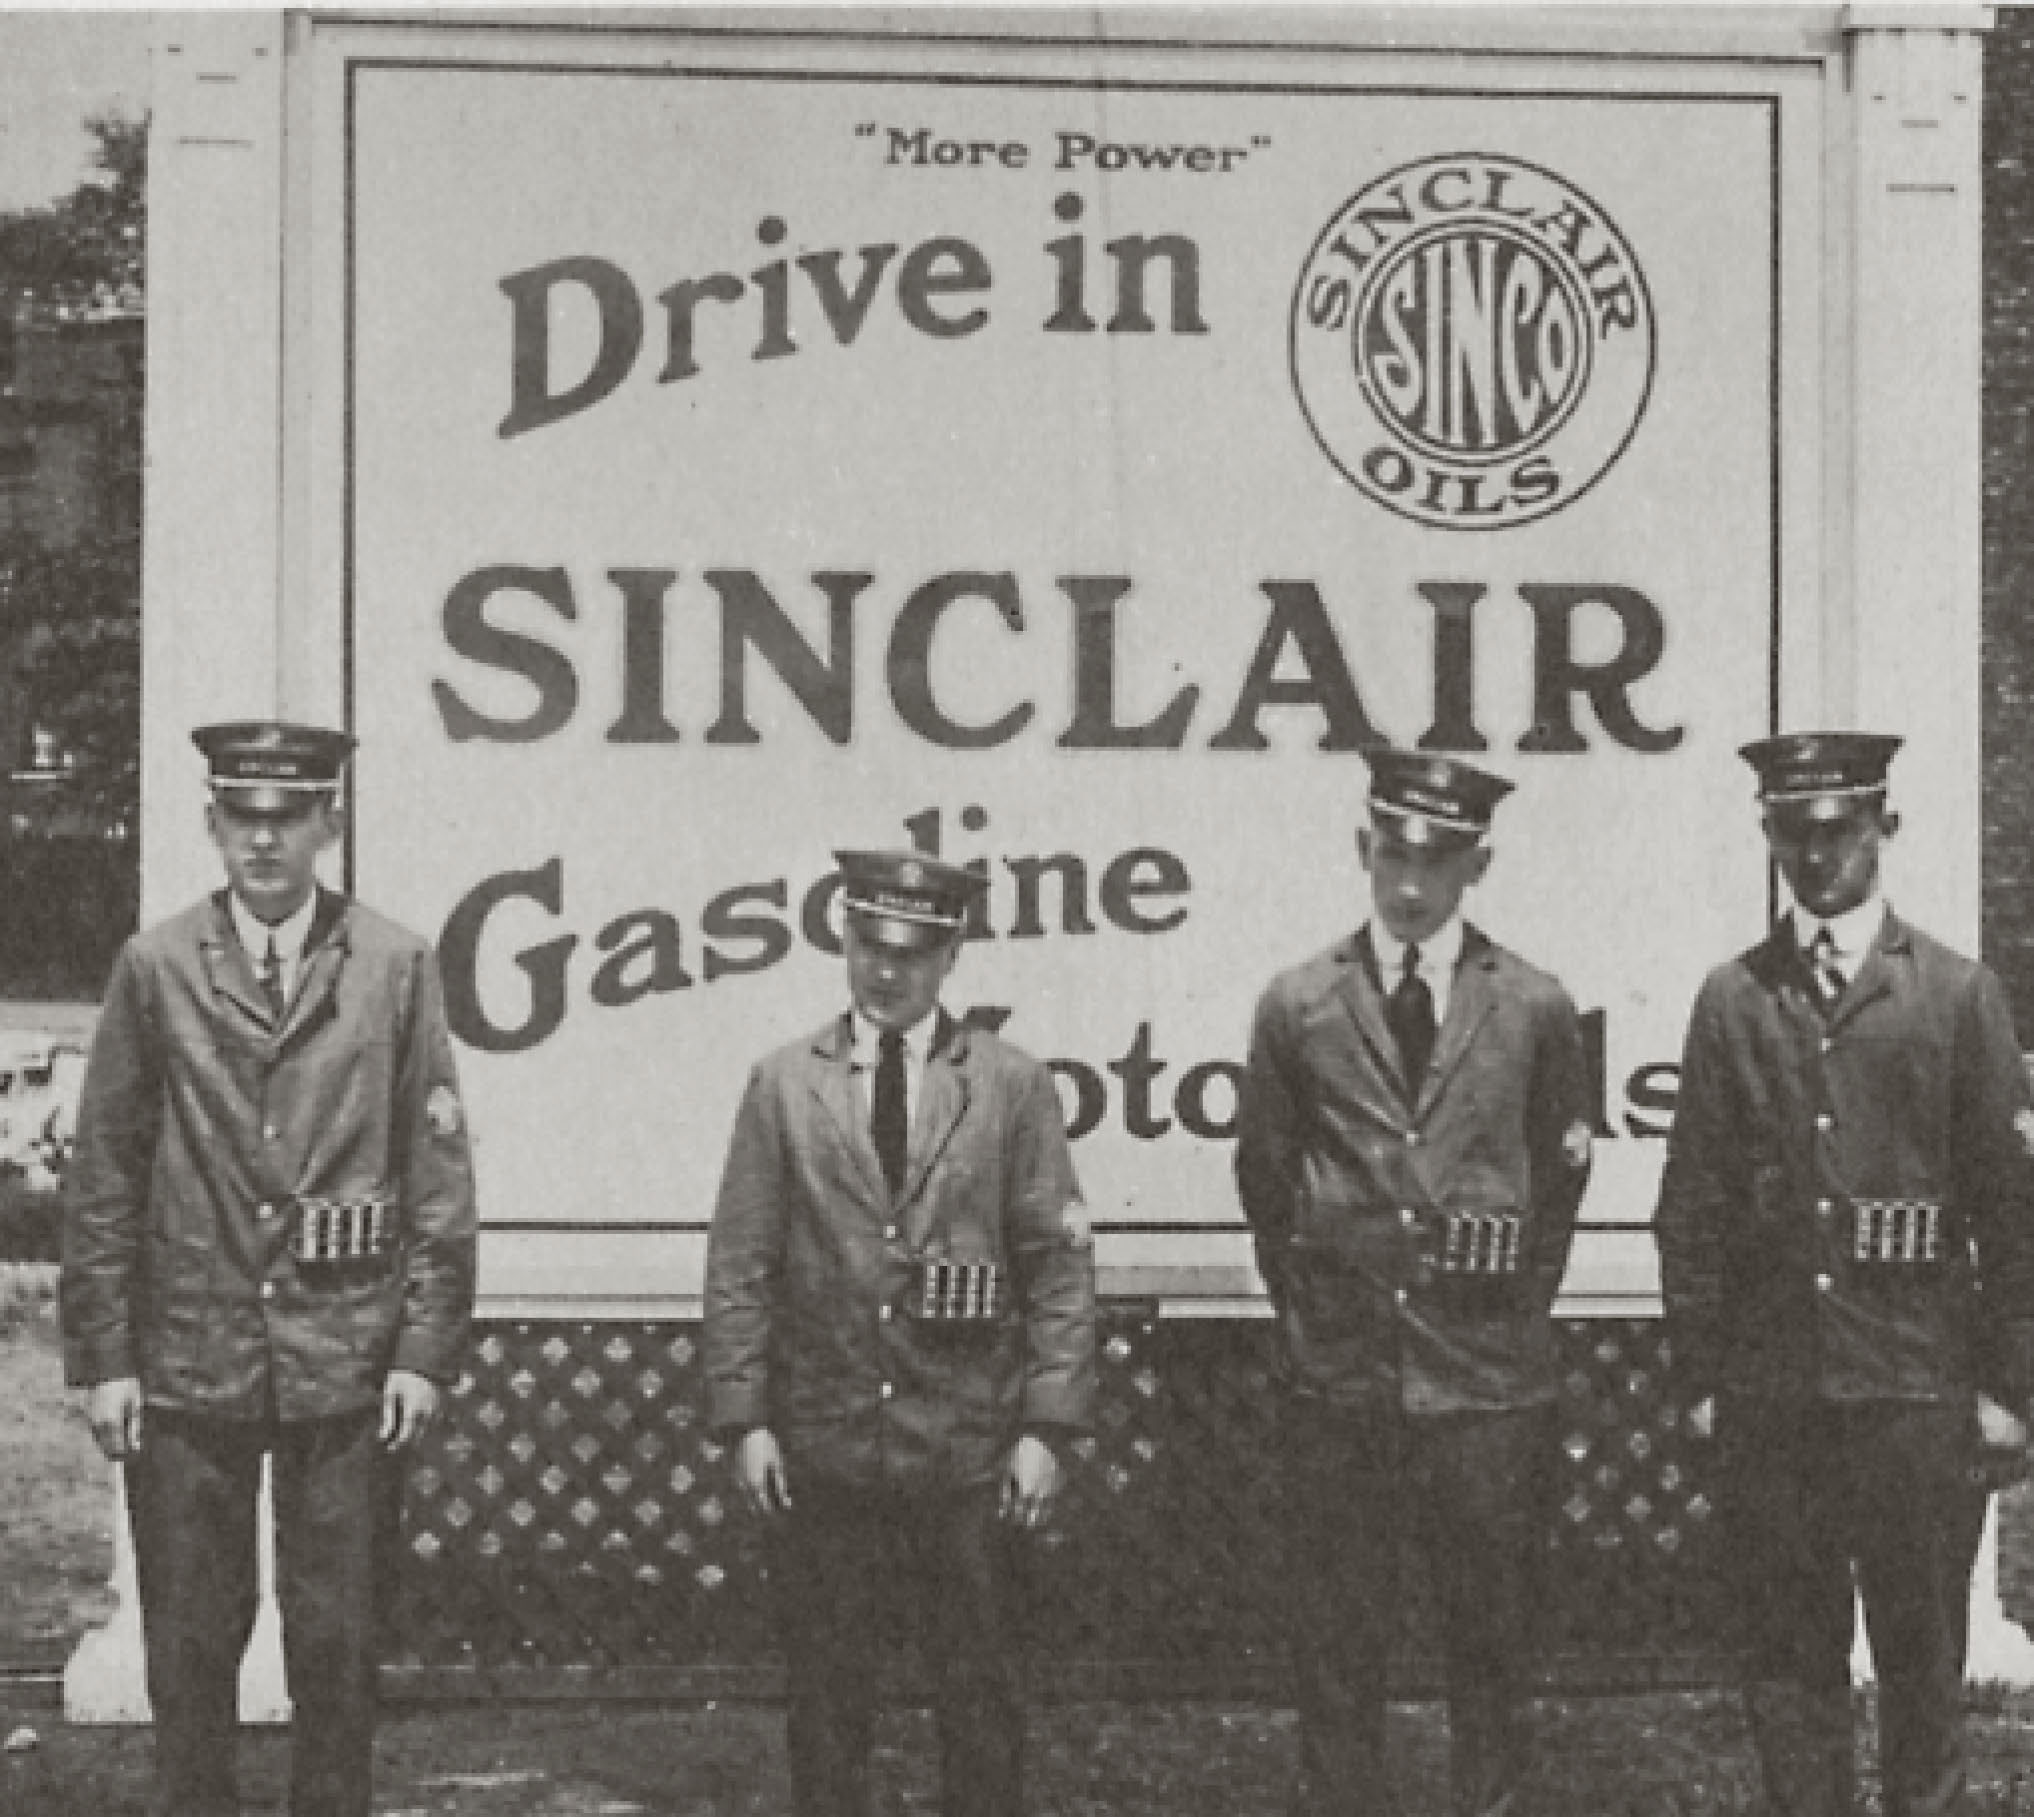 sinclair 1910s drivein